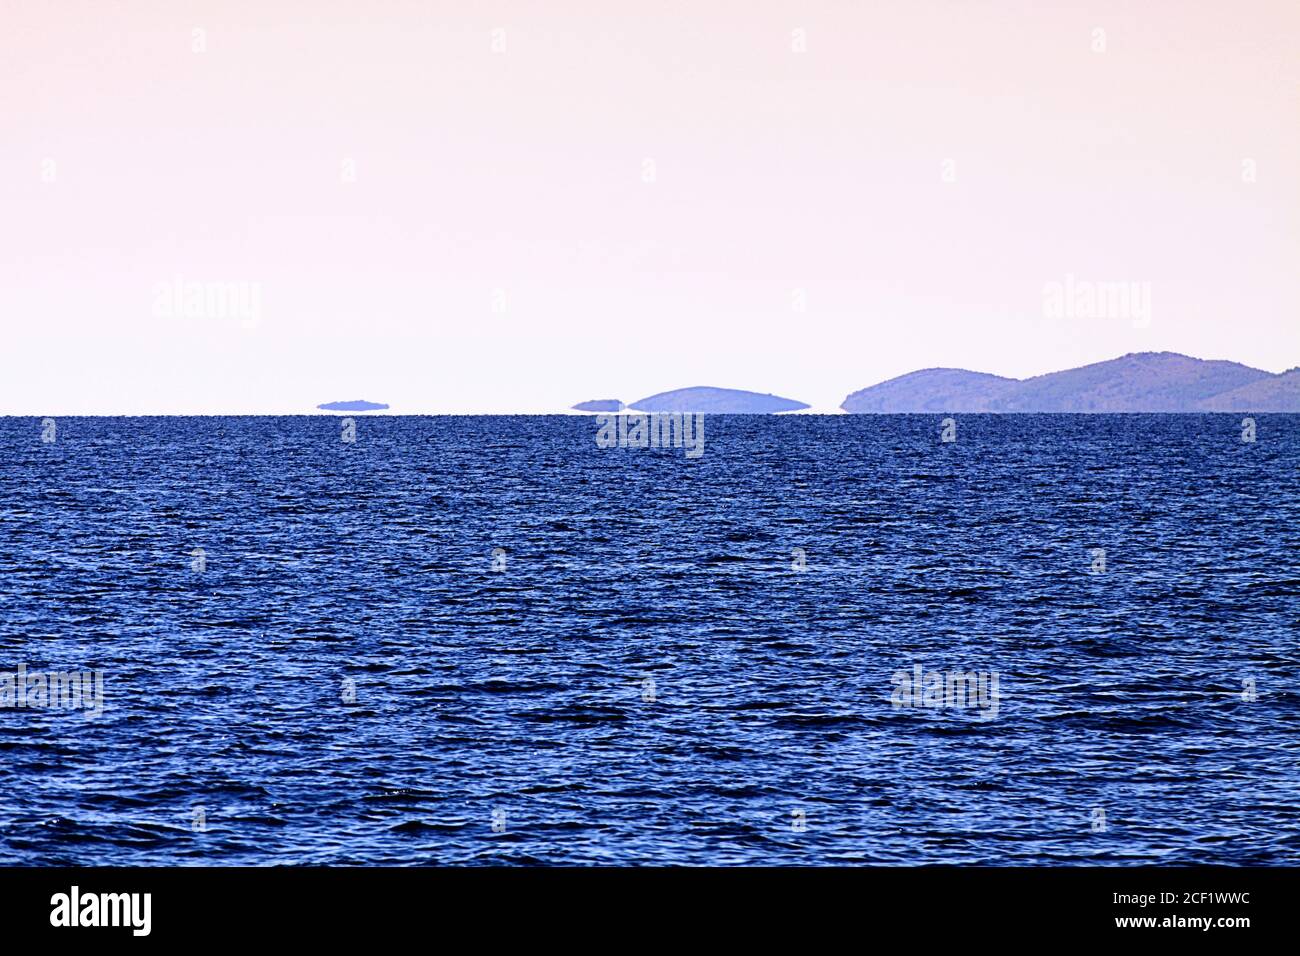 FATA morgana Mirage auf den Kornaten, weit von der dalmatinischen Küste Kroatiens entfernt Stockfoto